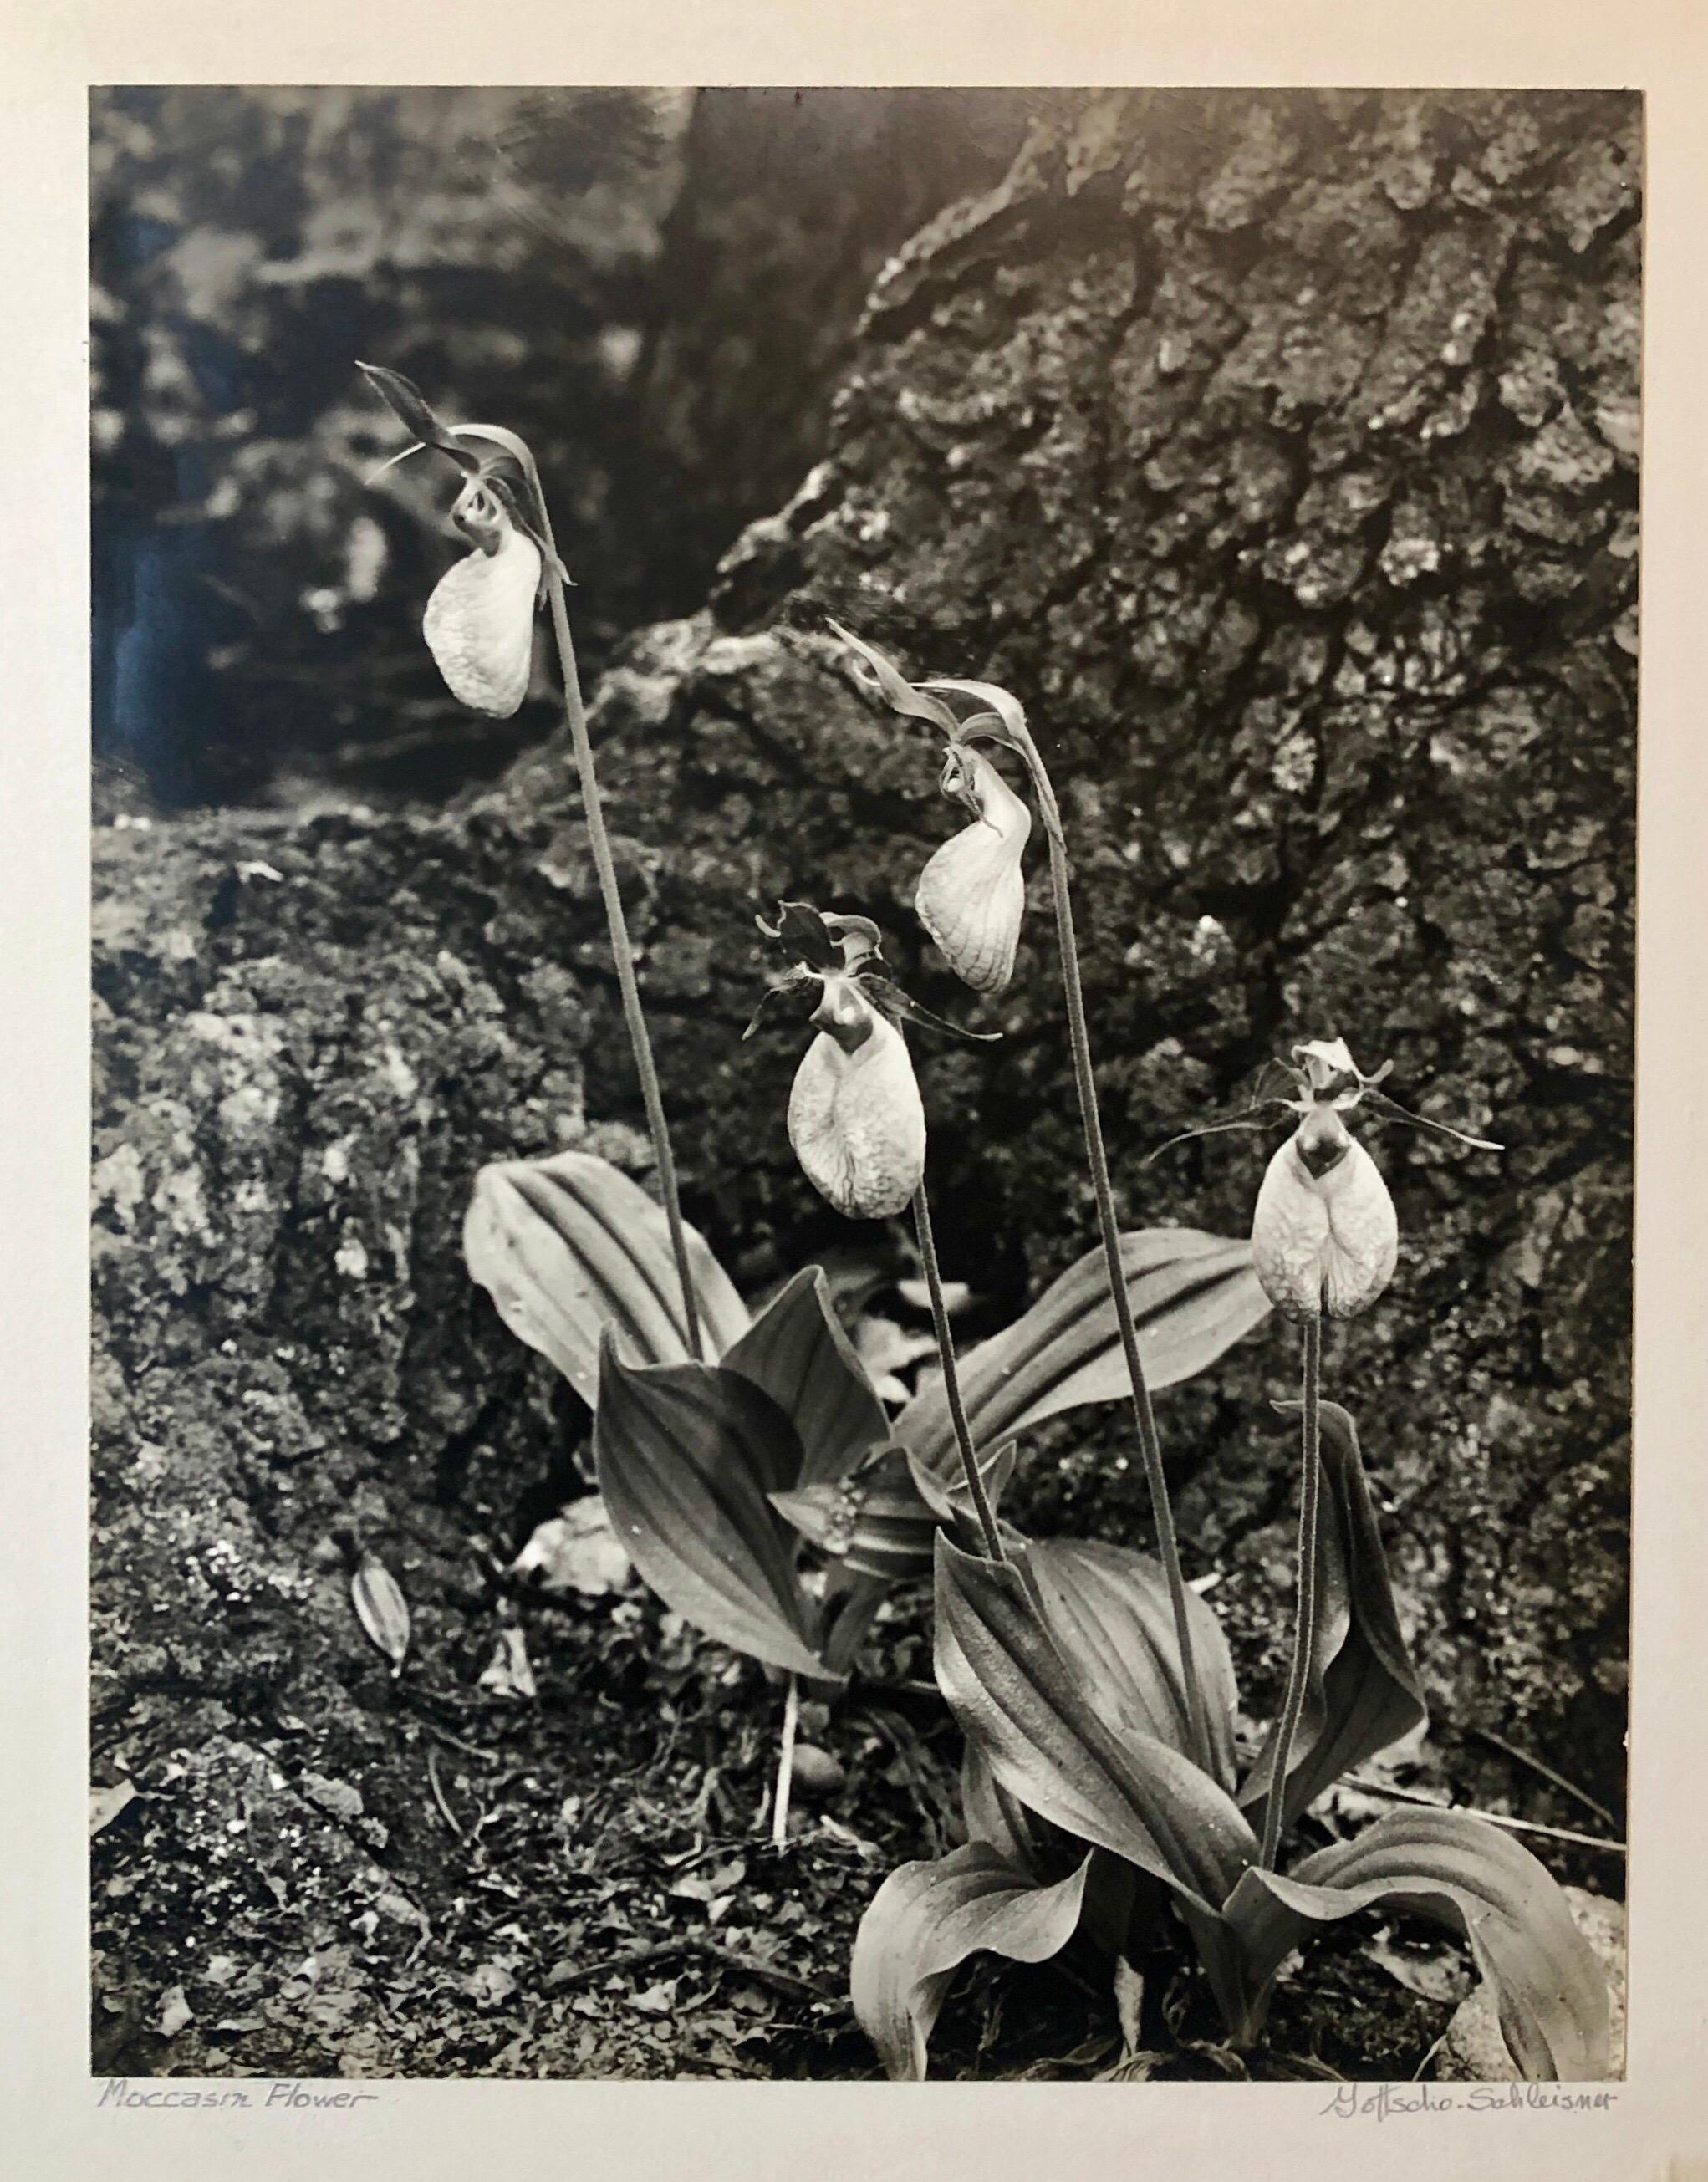 Silber-Gelatine-Fotografie, signiert Samuel Gottscho, Gartenblumen, NY